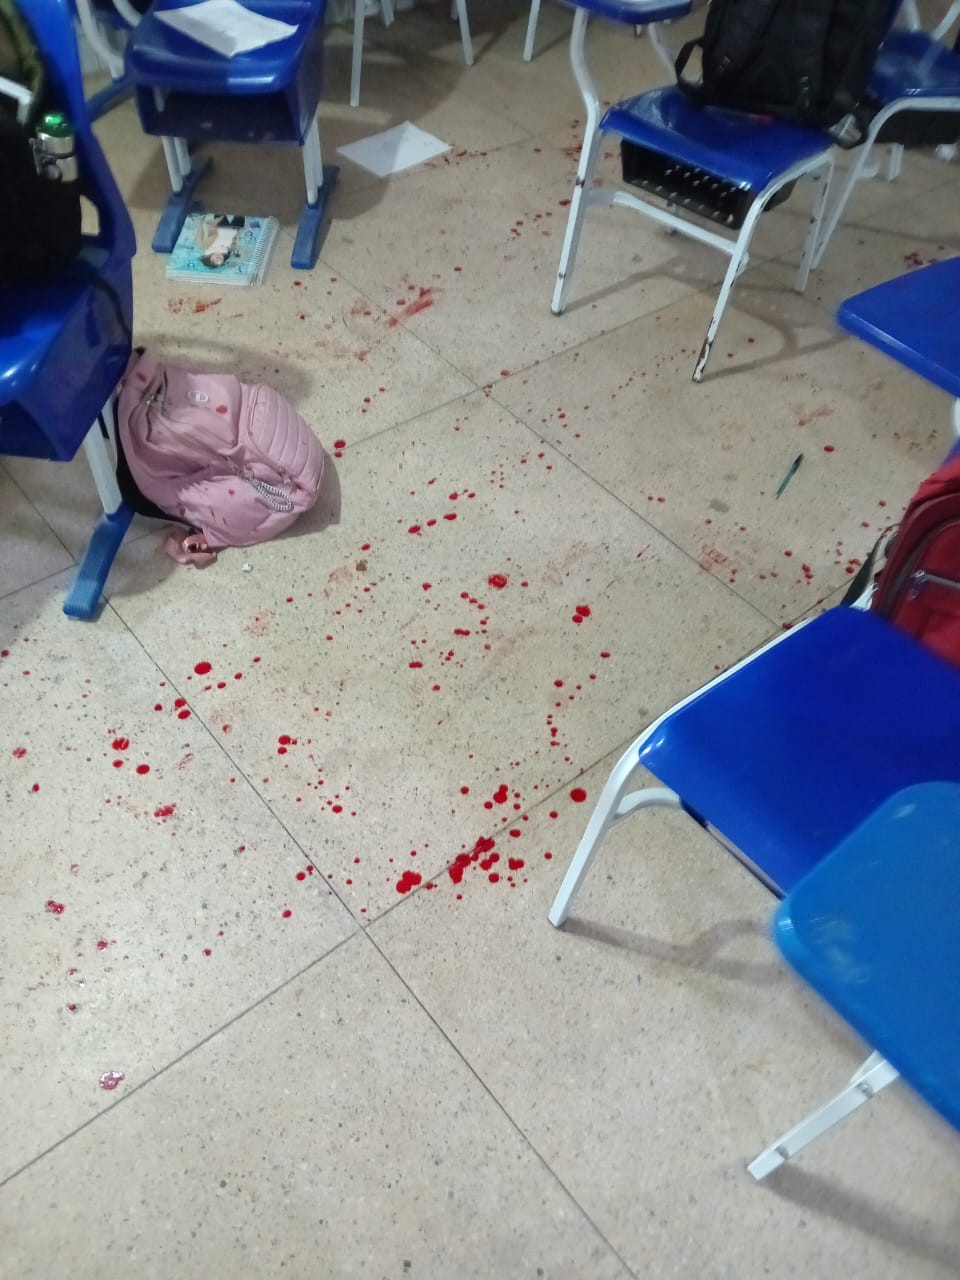 Adolescente confessa que atirou em estudante em Igaci; Justiça determina internação provisória